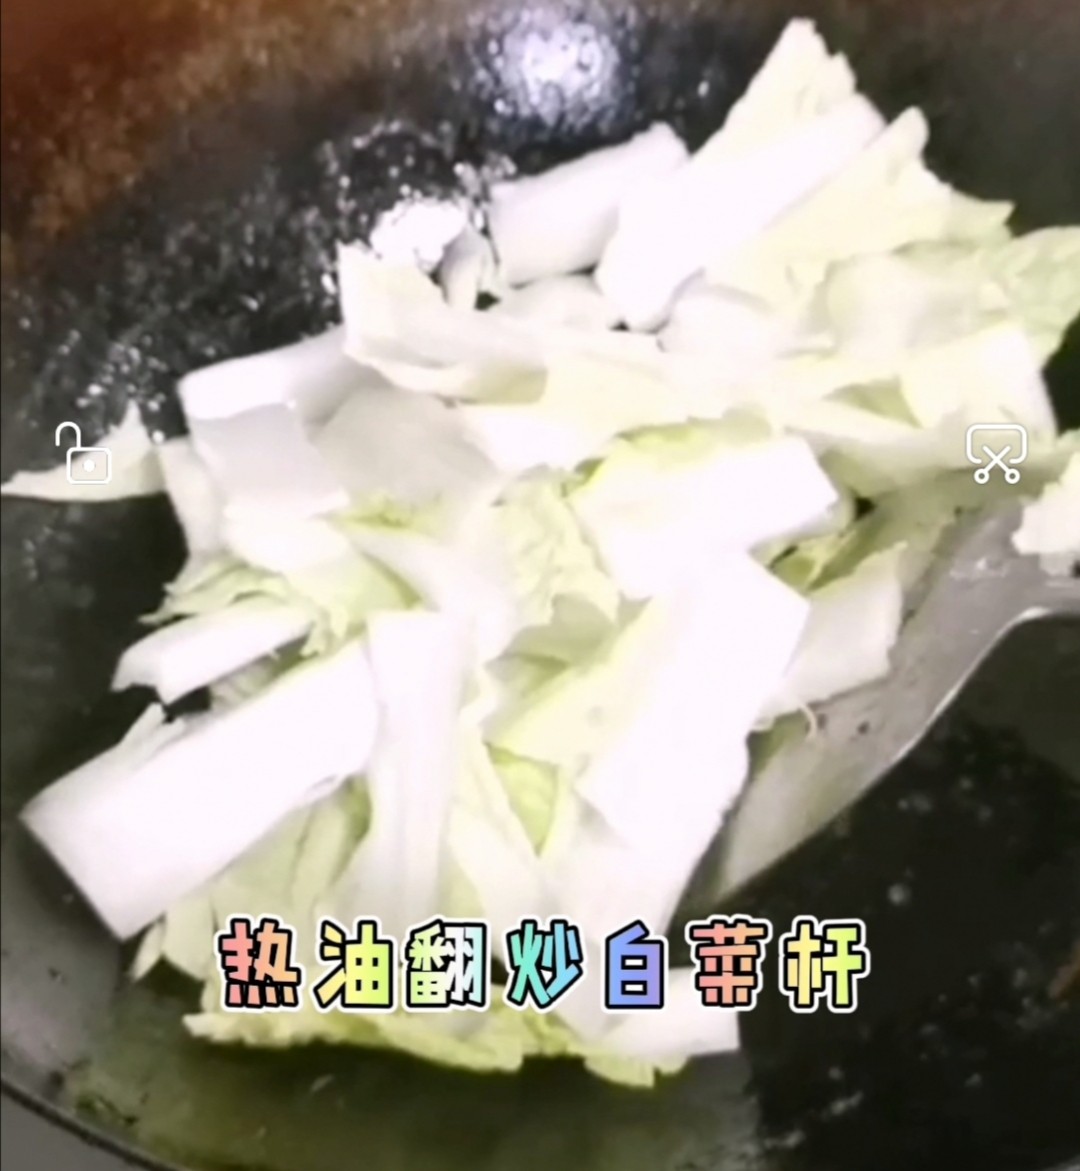 Shrimp Flavored Cabbage recipe